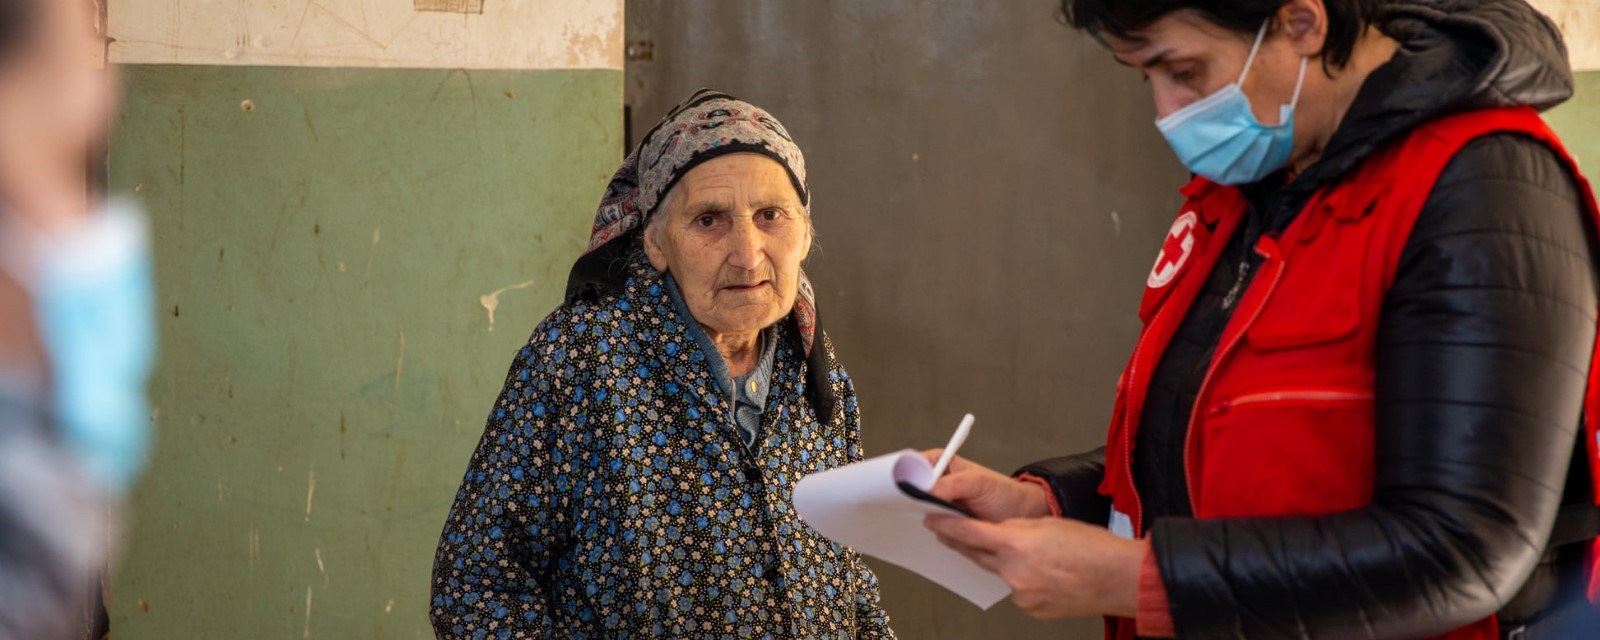 En eldre kvinne ser inn i kamera mens en frivillig fra Røde Kors står ved siden av og skriver på et papir.